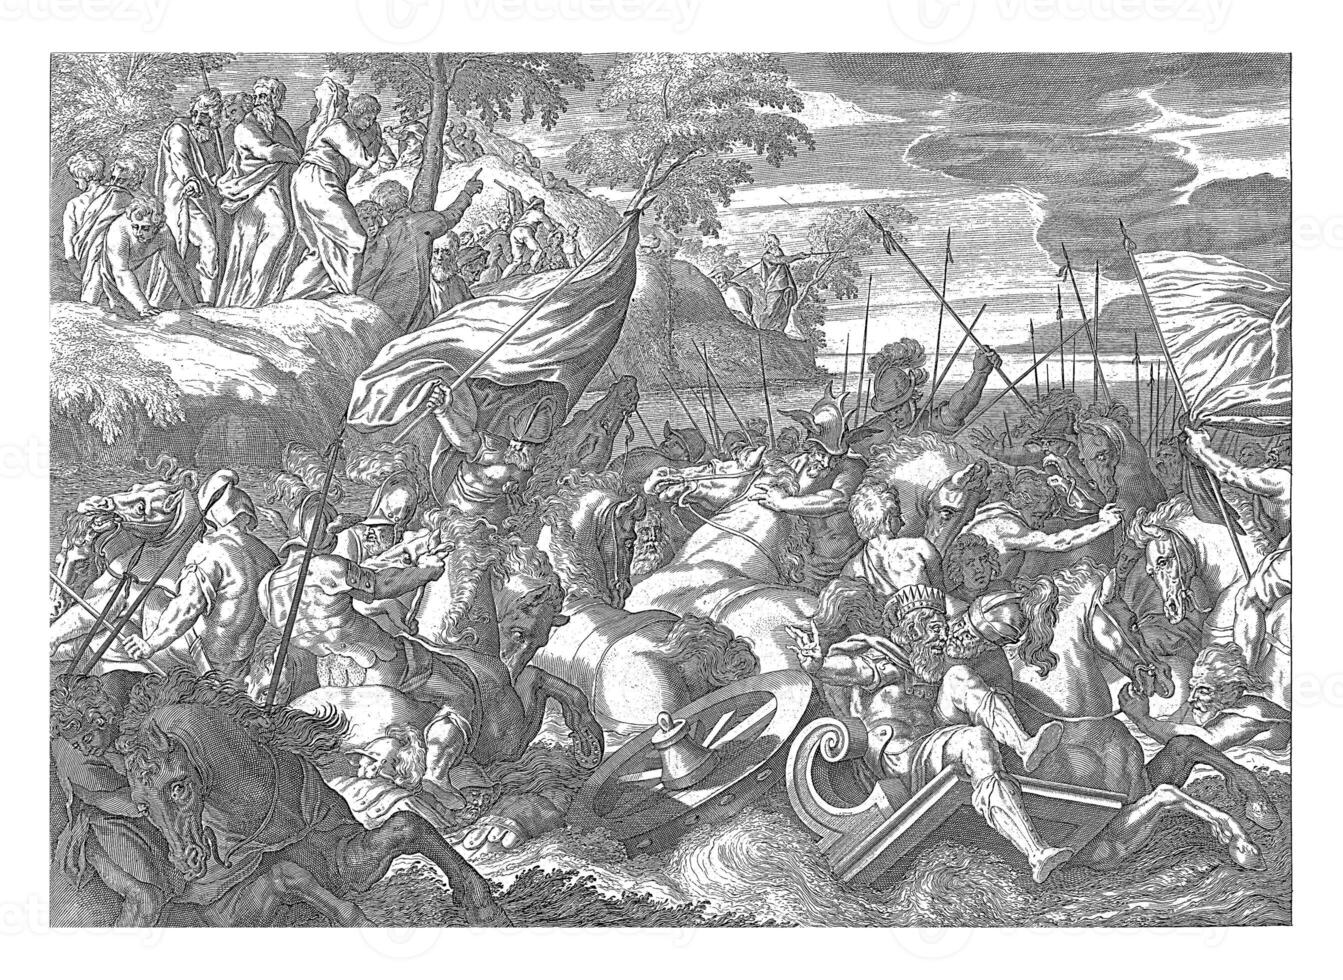 Pharao und seine Heer Ertrinken im das rot Meer, anonym, nach orazio Farinati, nach paolo Farinati, 1630 - - 1702 foto